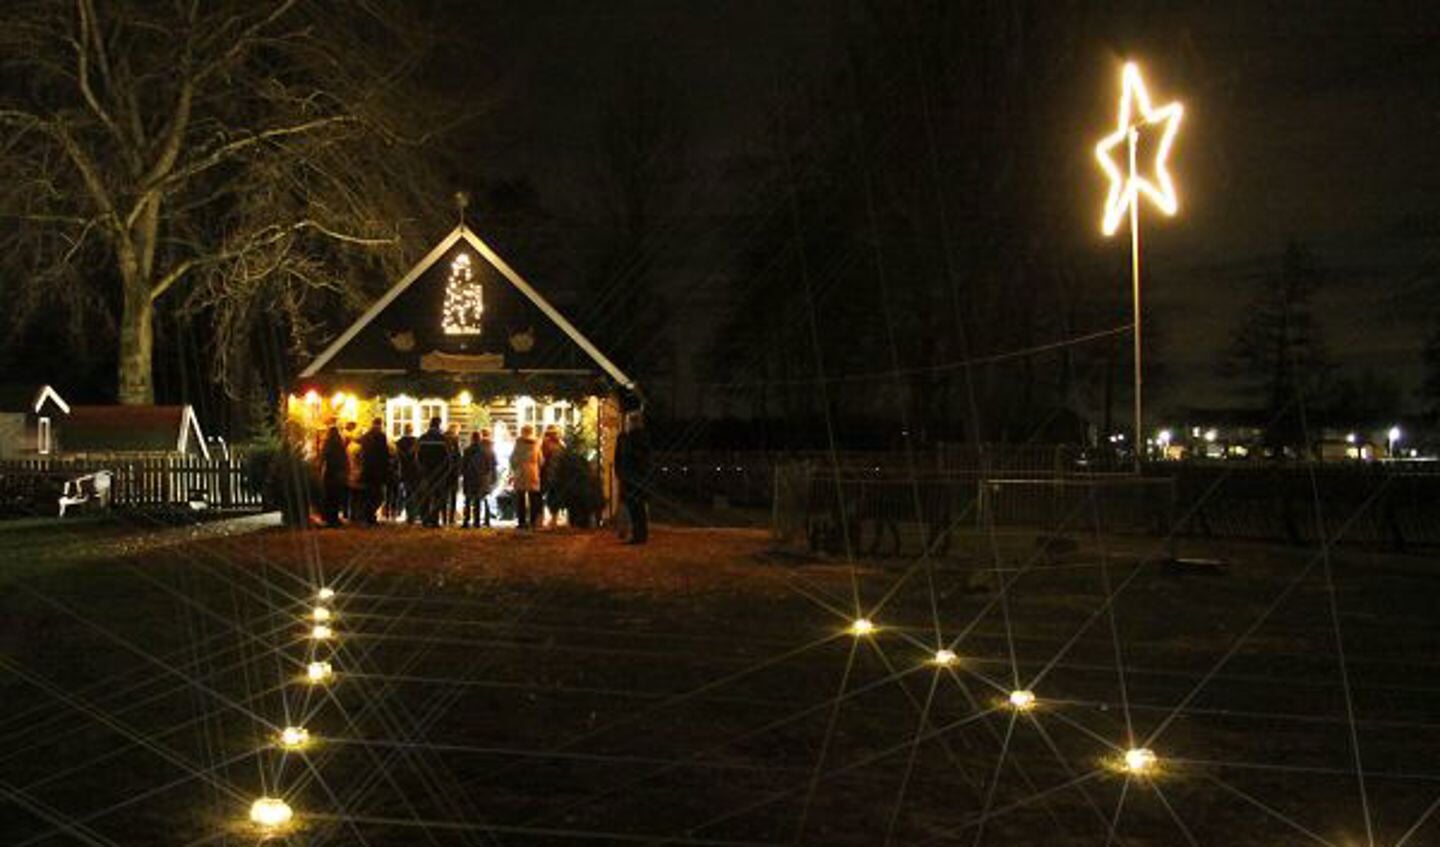 Sfeervol kerstevent in het Wentholtpark. Foto: PR Wentholtpark